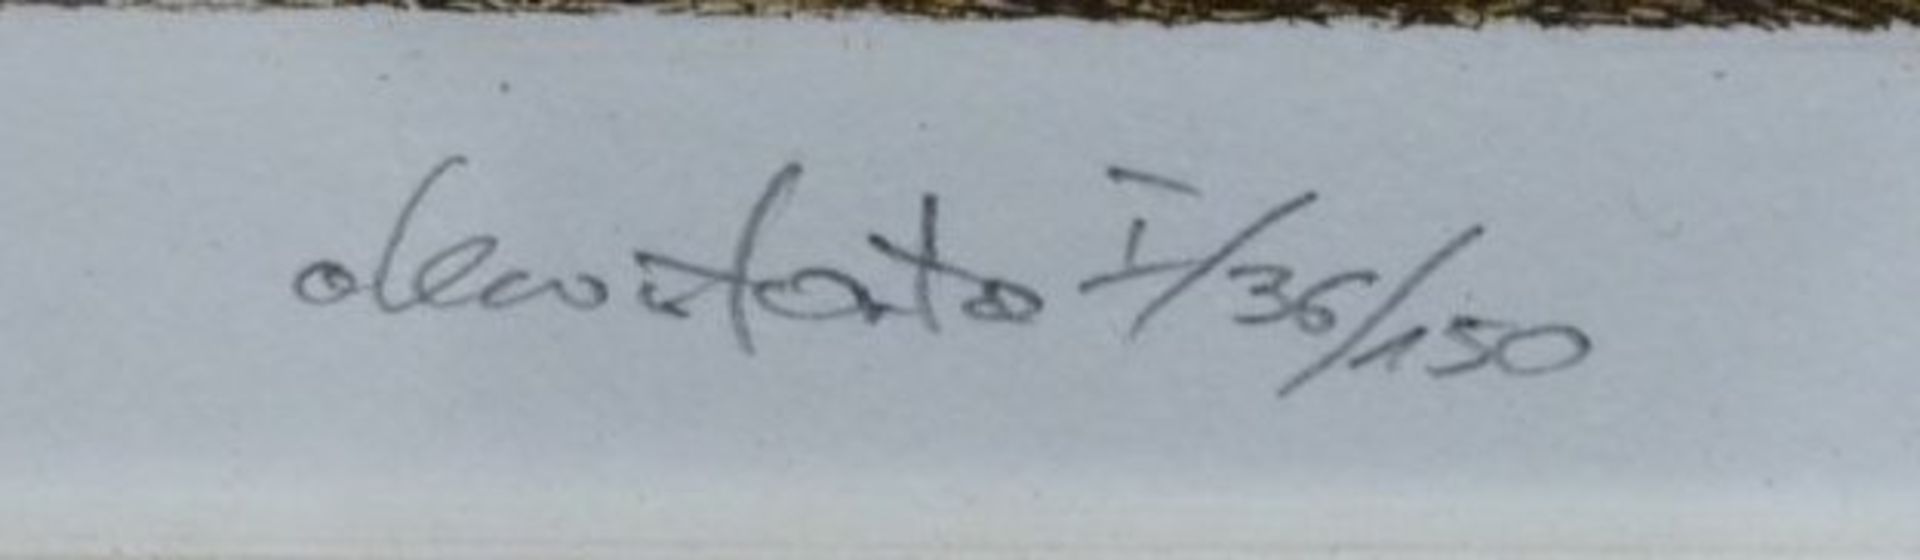 unleserl. signierte Radierung "Danzig", datiert und nummeriert, ger./Glas, RG 32 x 42cm. - Bild 3 aus 6